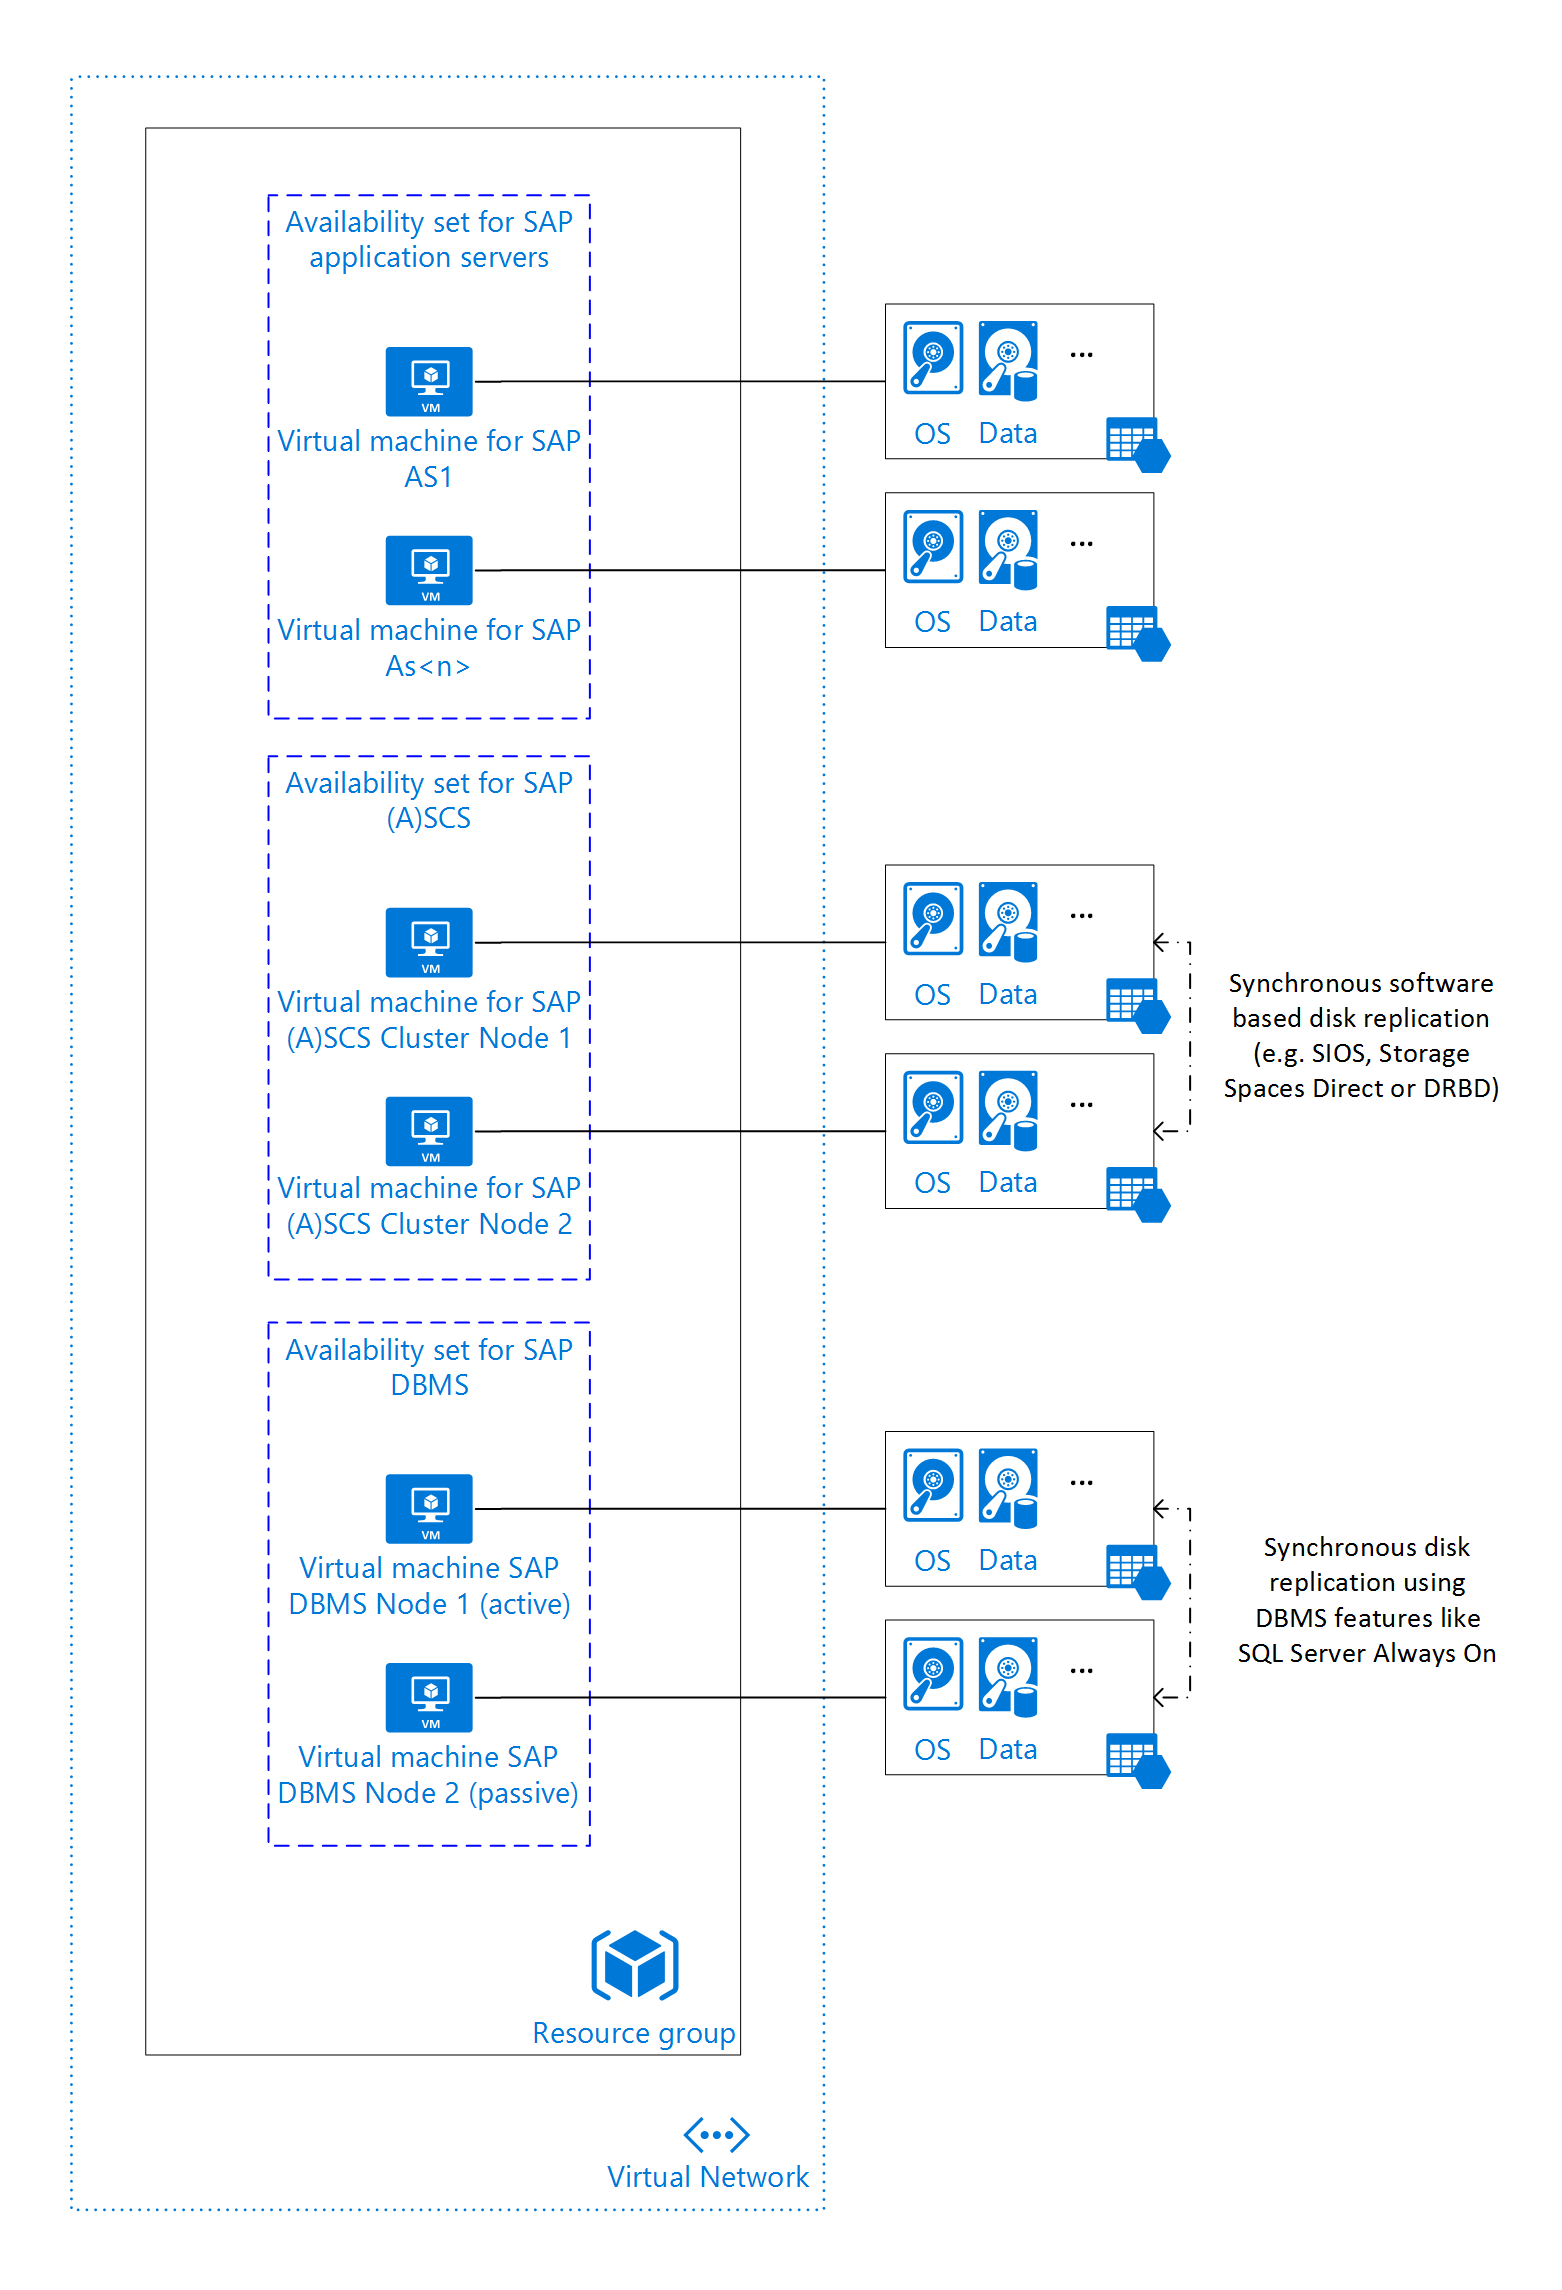 示意图显示了 Azure IaaS 中包含 SQL Server 的 SAP NetWeaver 应用程序 HA 体系结构。